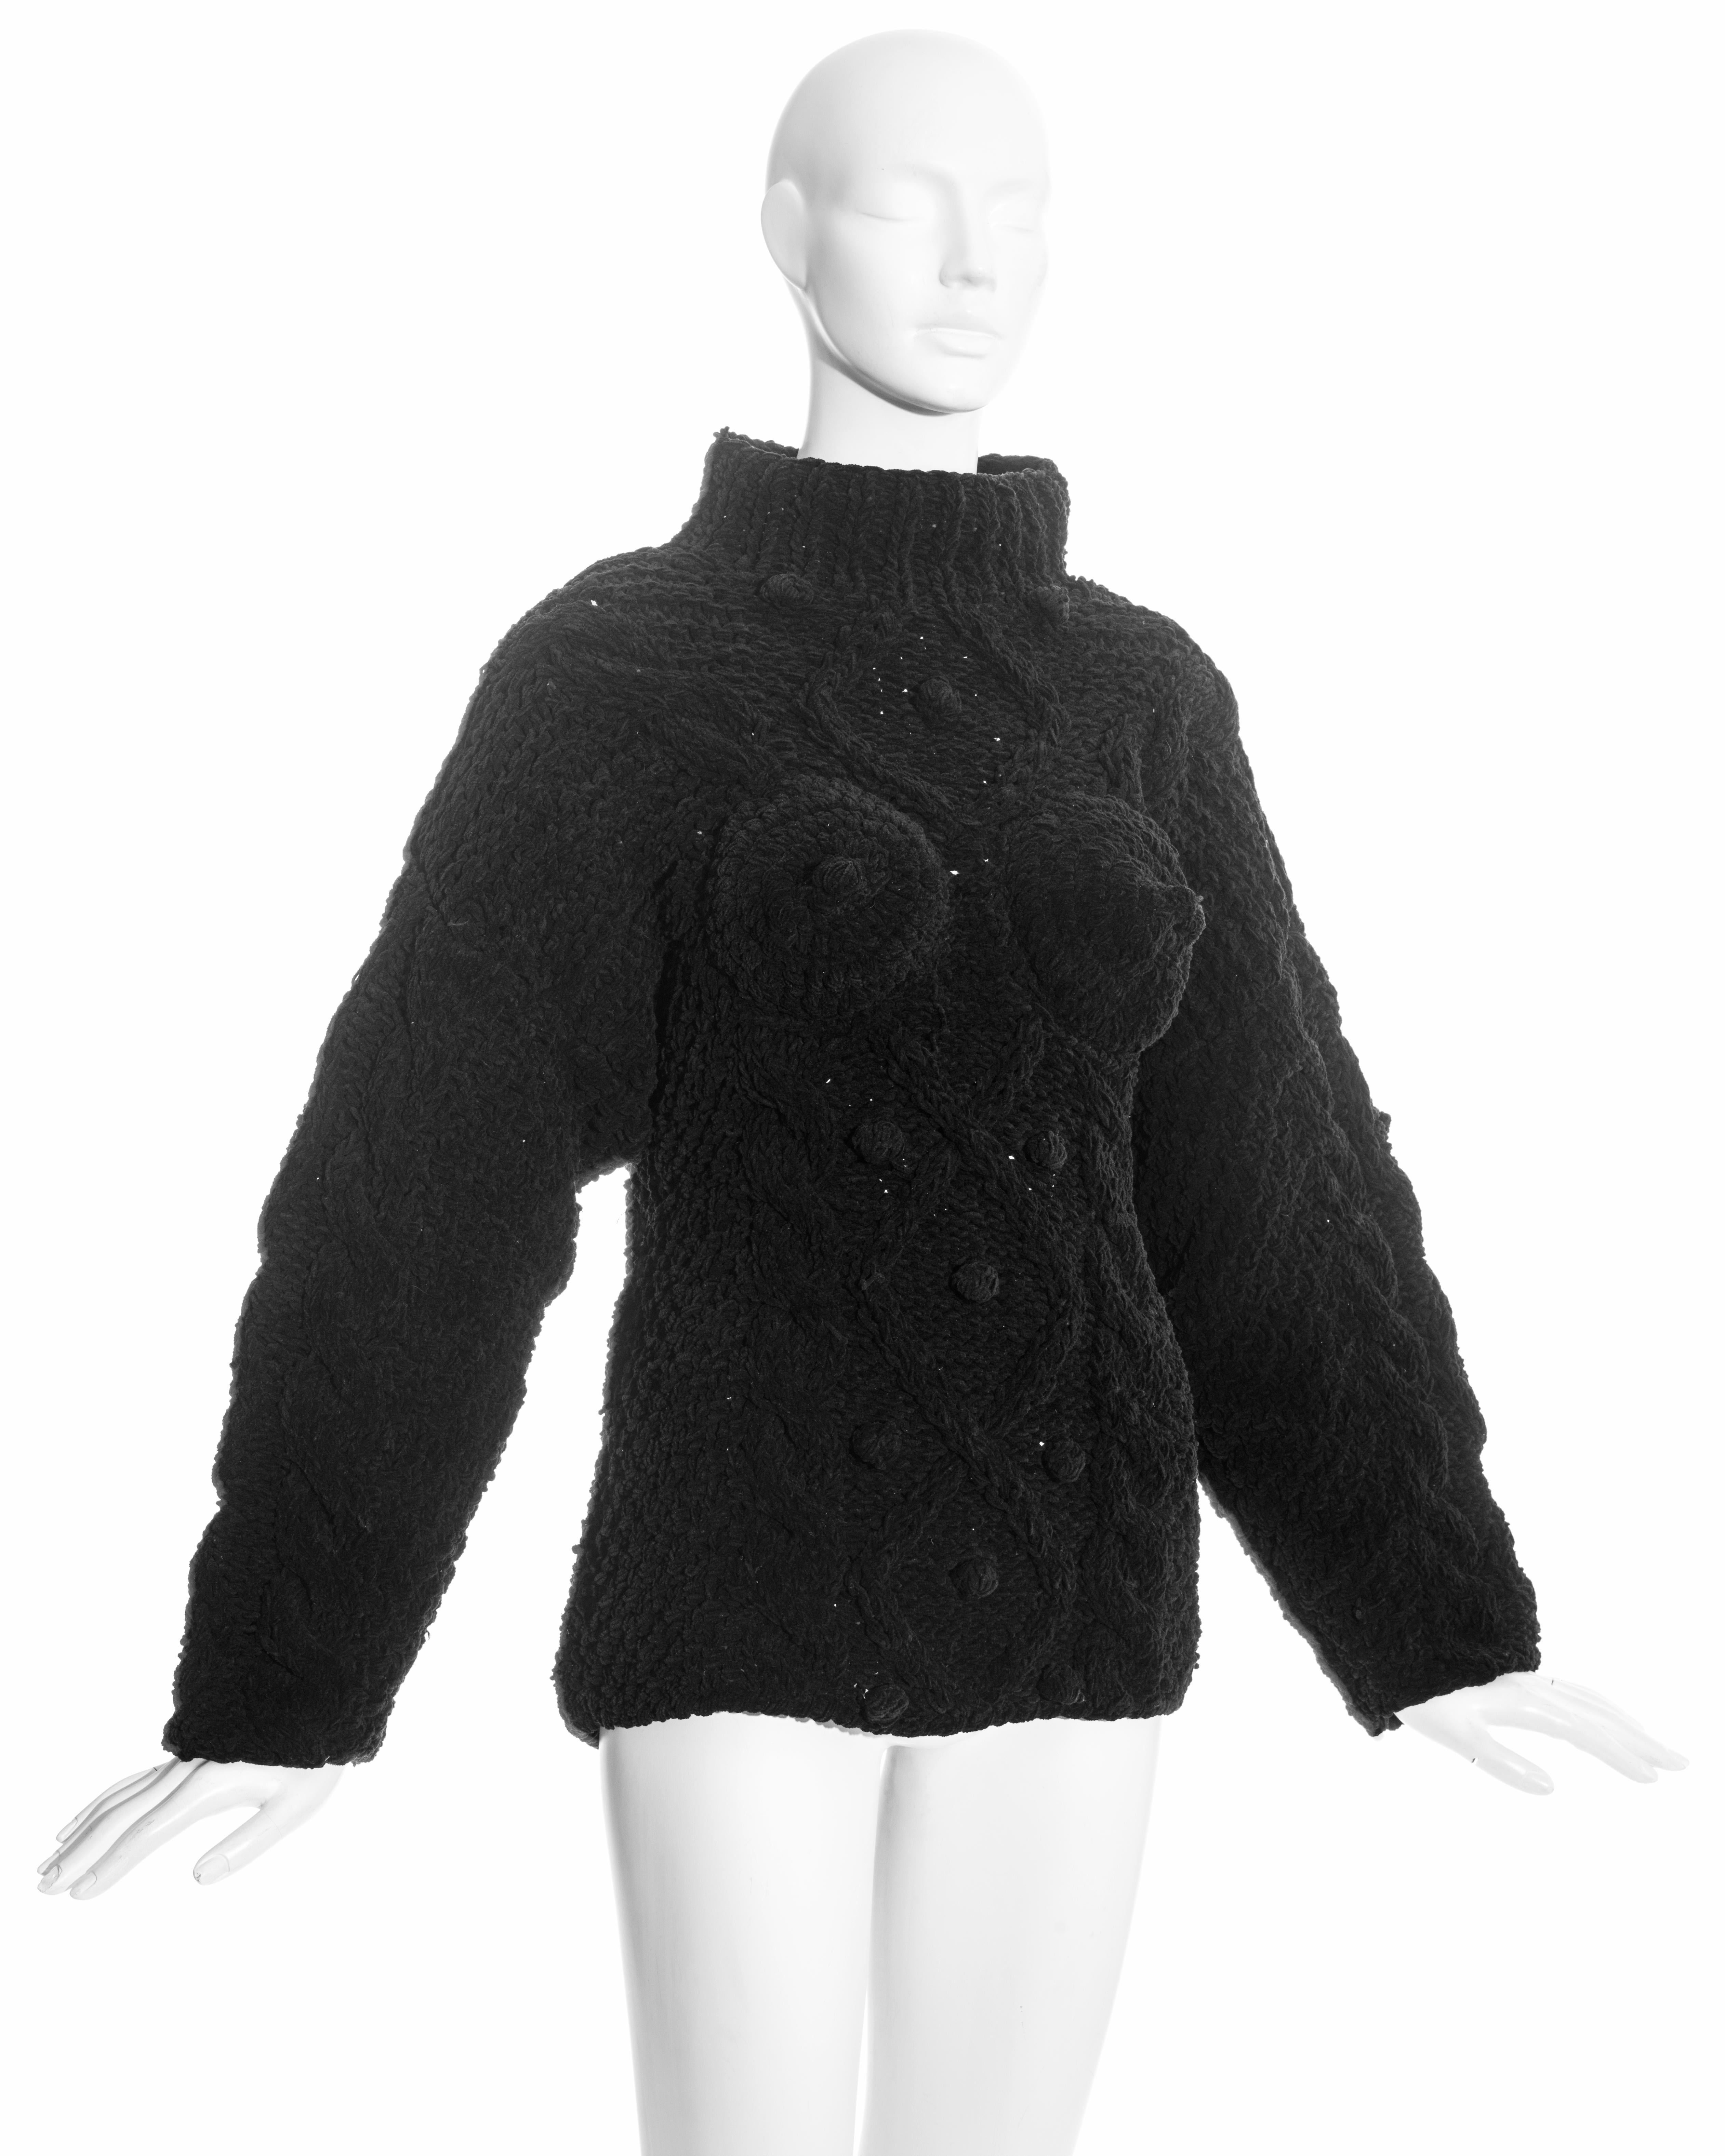 Jean Paul Gaultier schwarzer Chenille-Aran-Pullover mit breitem Stehkragen, Reißverschluss in der hinteren Mitte und den für Gaultier typischen konischen Brustpaneelen mit Nippeln. 

Herbst-Winter 1985